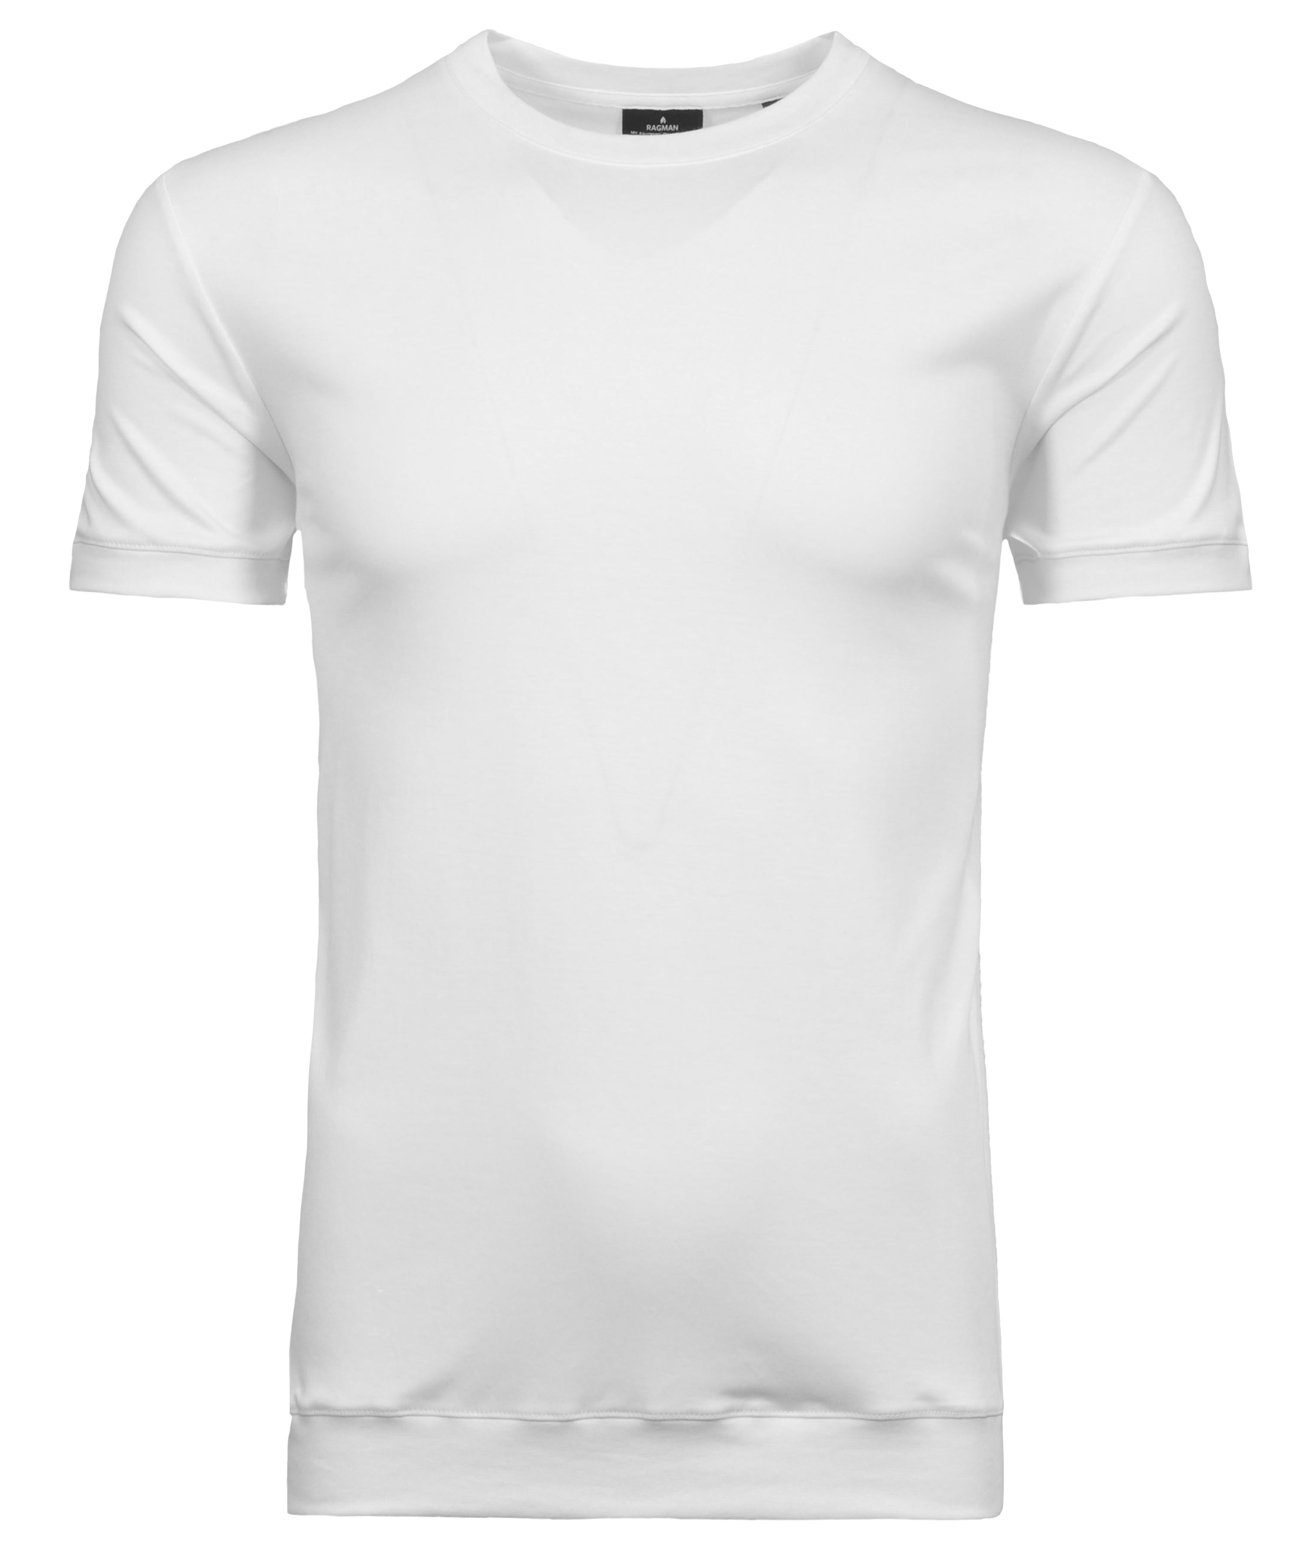 Weiss T-Shirt RAGMAN